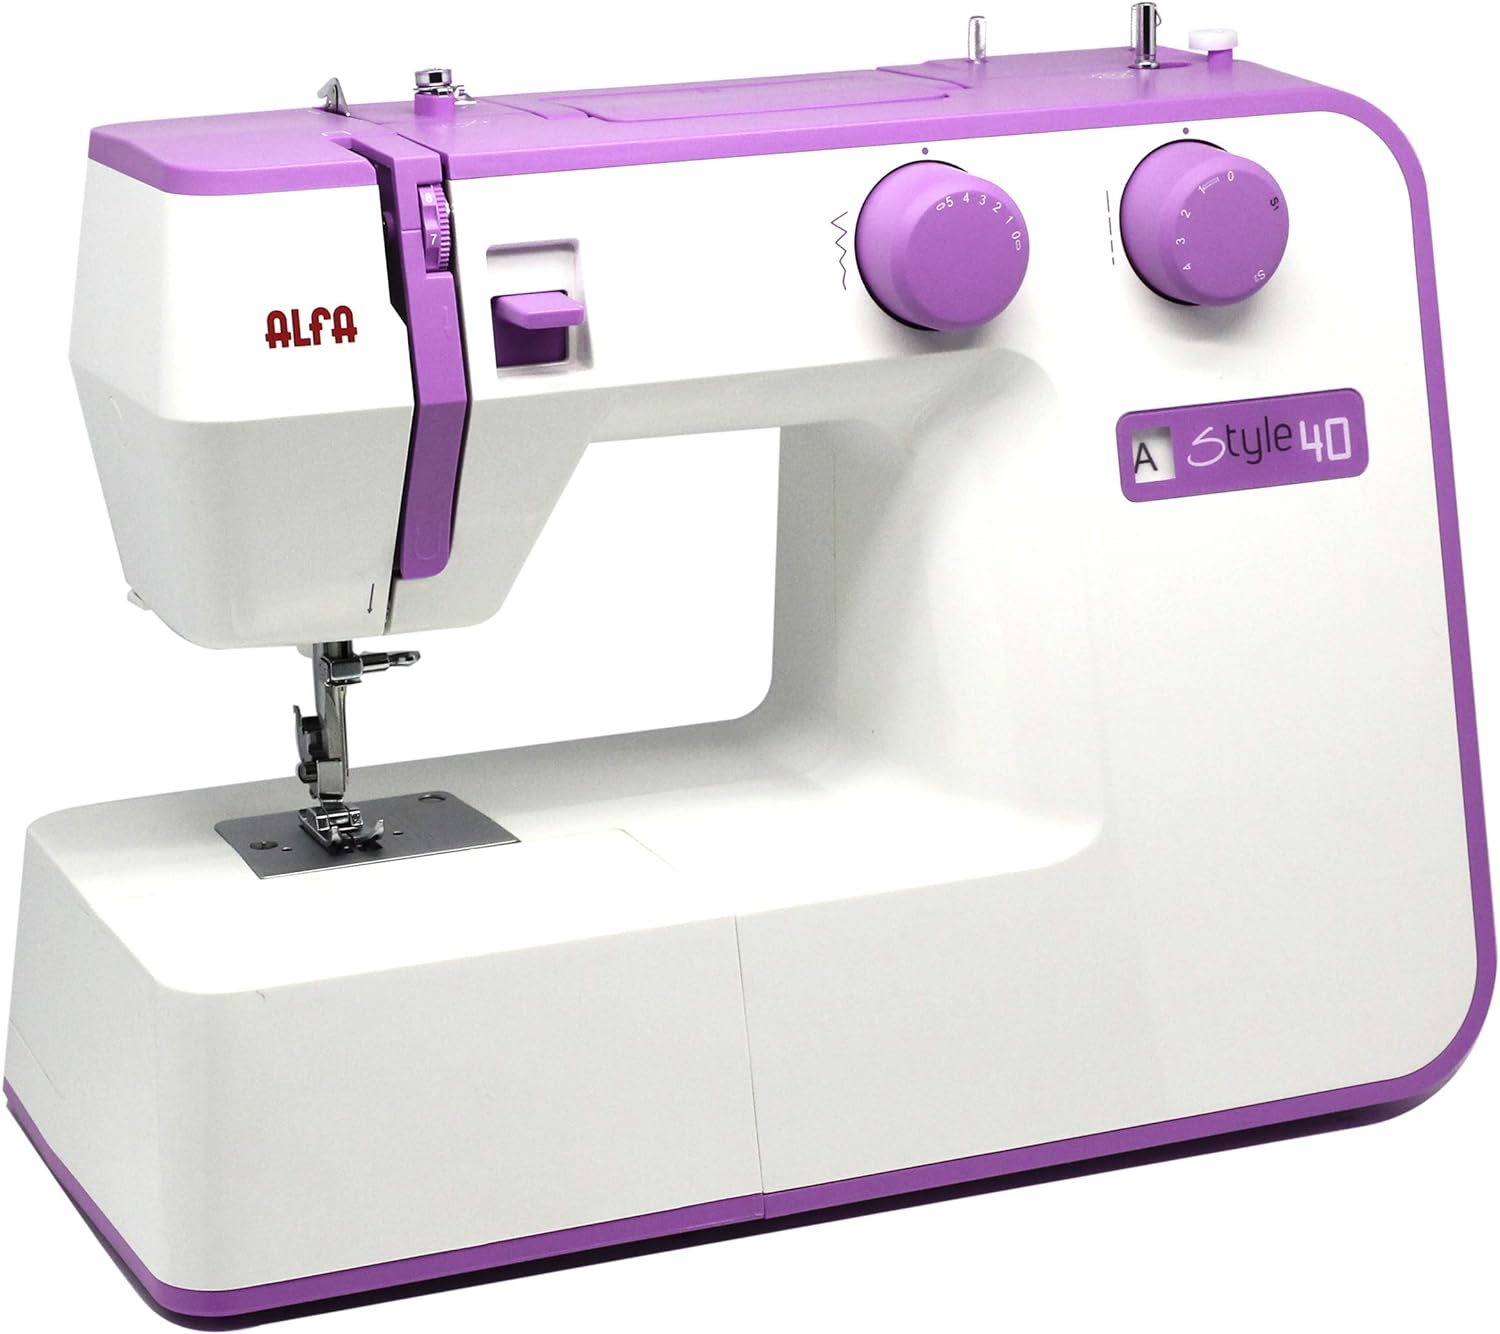 Descubre qué son las canillas de tu máquina de coser 